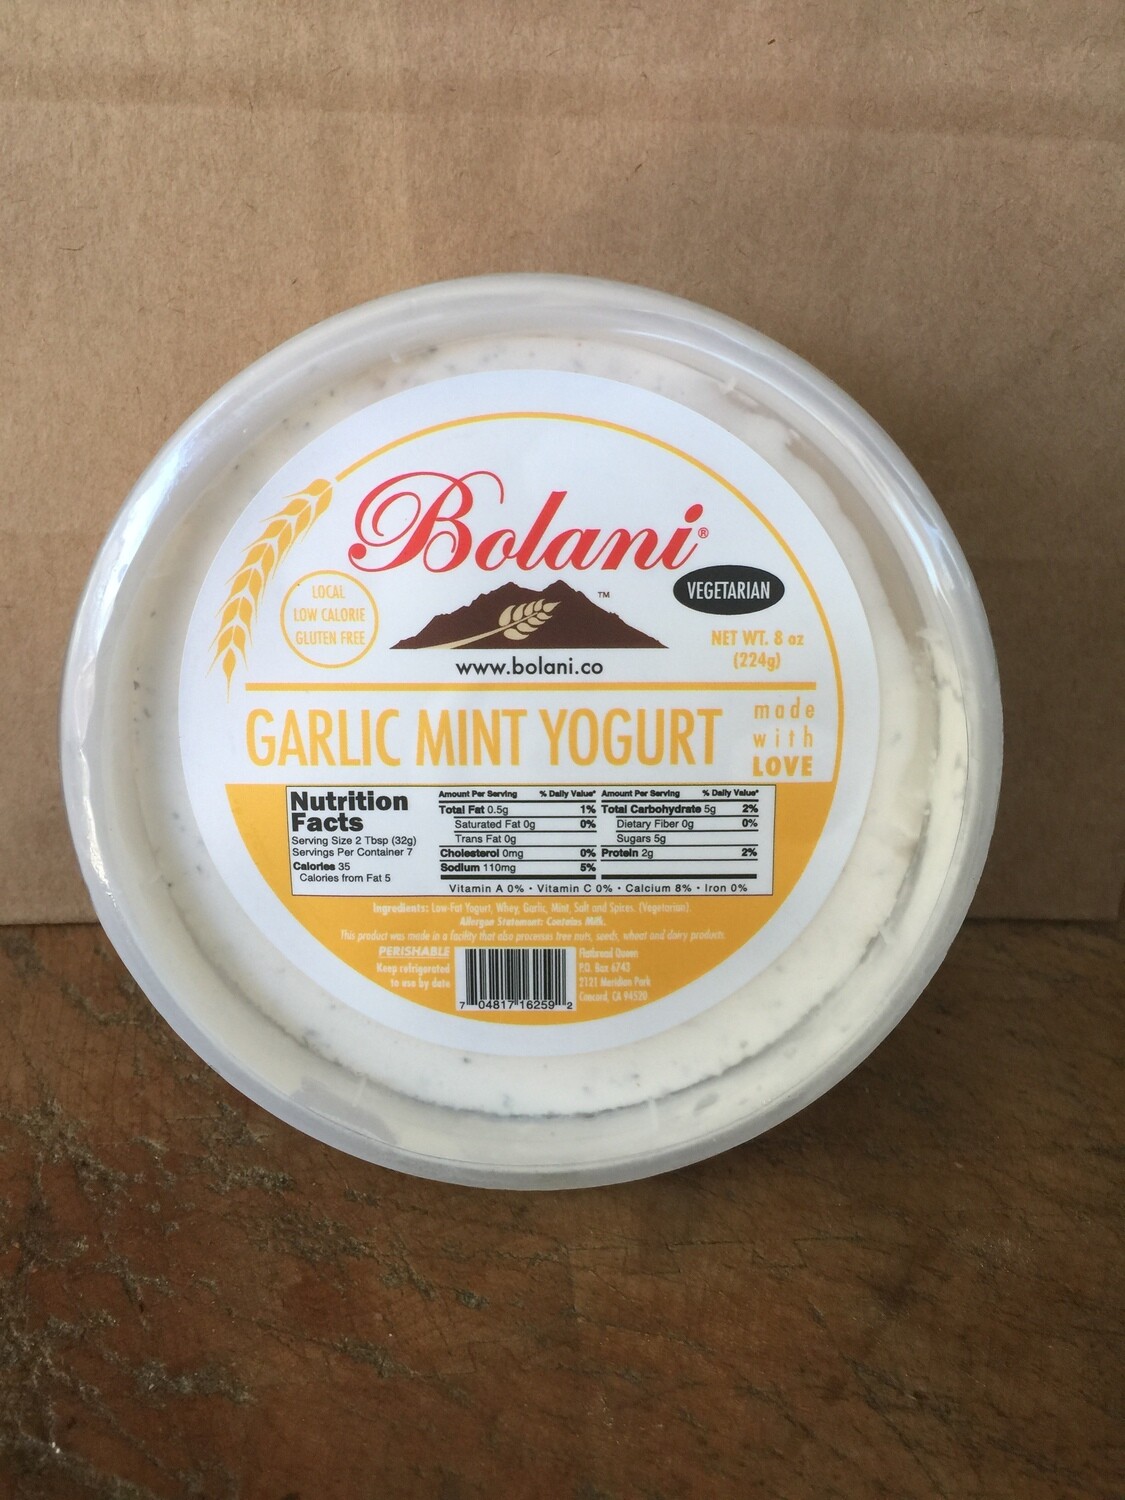 Deli / Sauce / Bolani Garlic Mint Yogurt, 8 oz